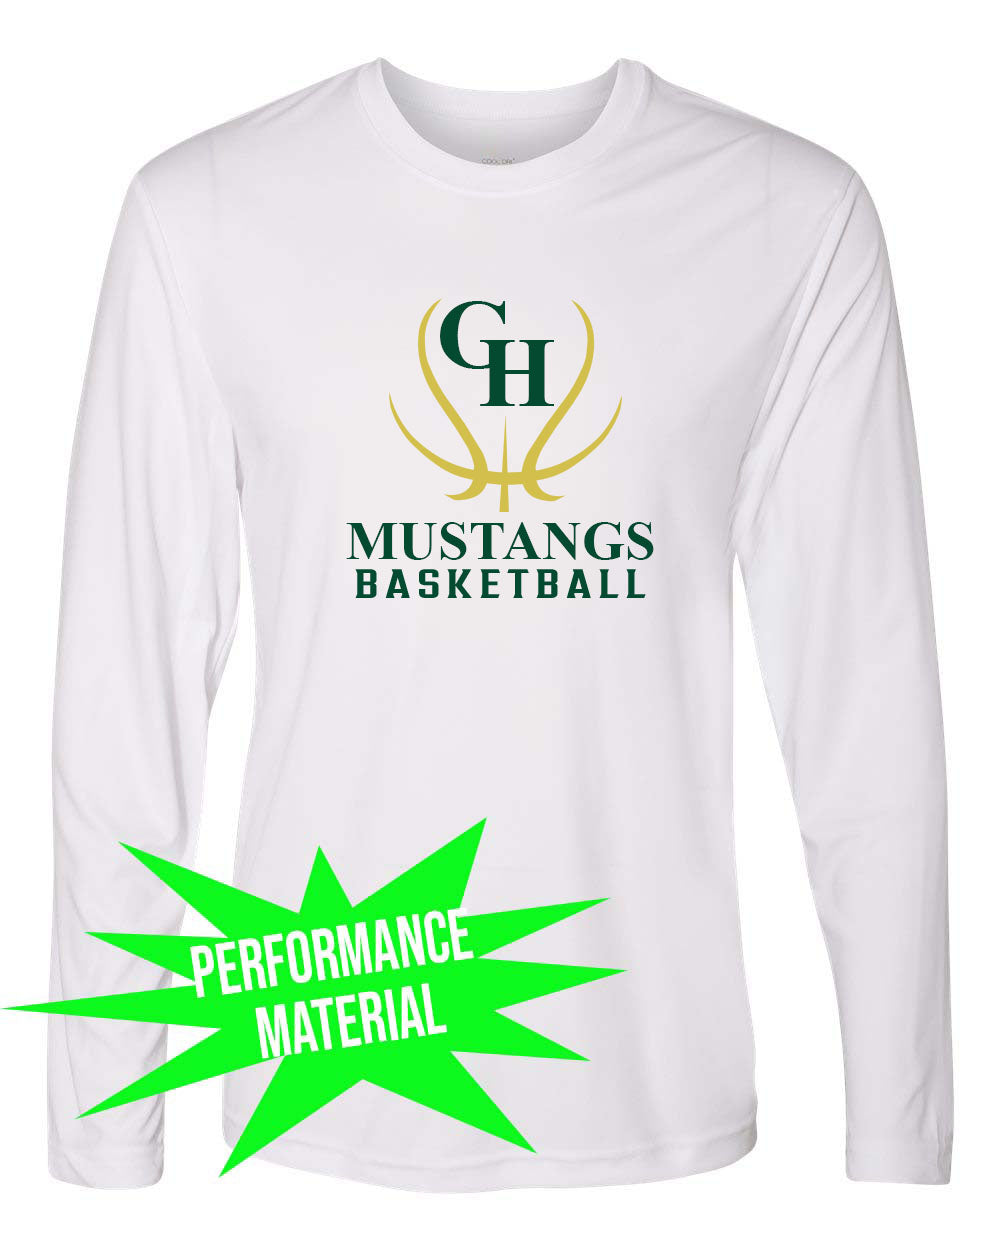 Green Hills Basketball Performance Material Long Sleeve Shirt Design 7